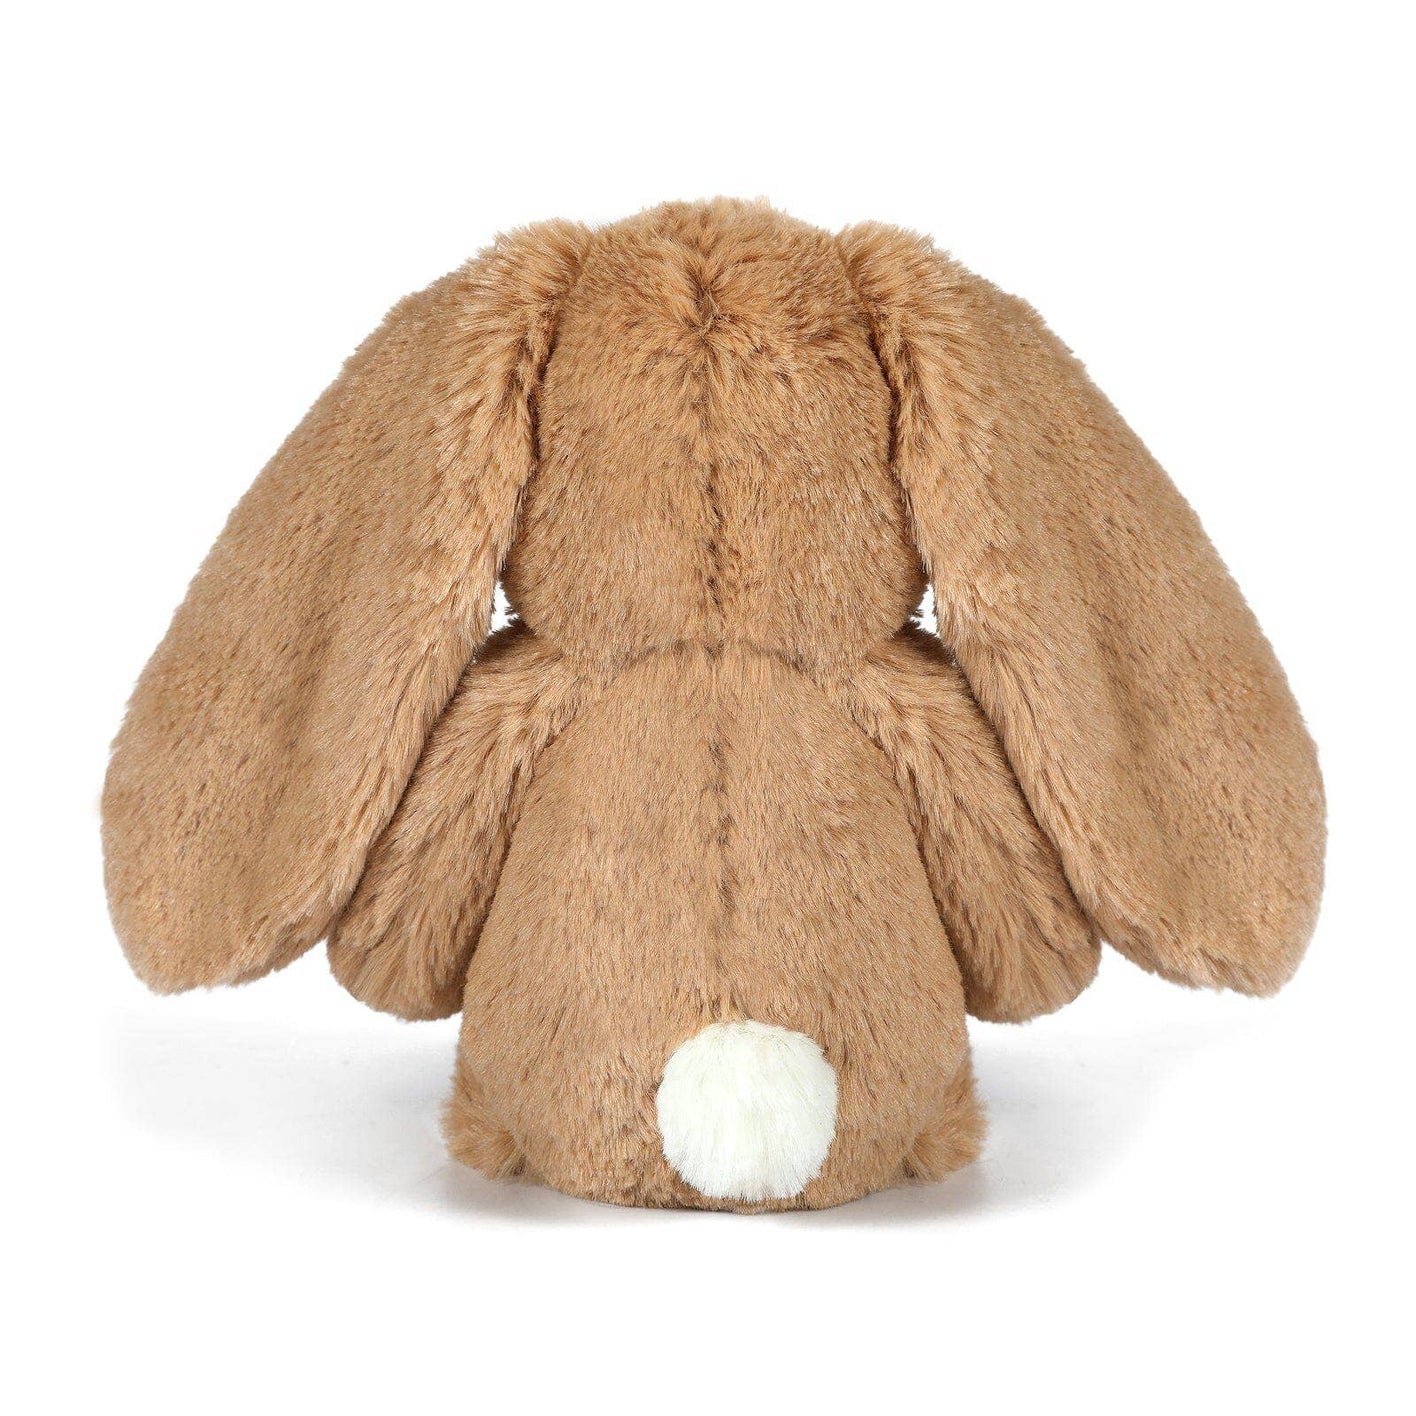 Little Bailey Caramel Bunny Soft Toy 25cm